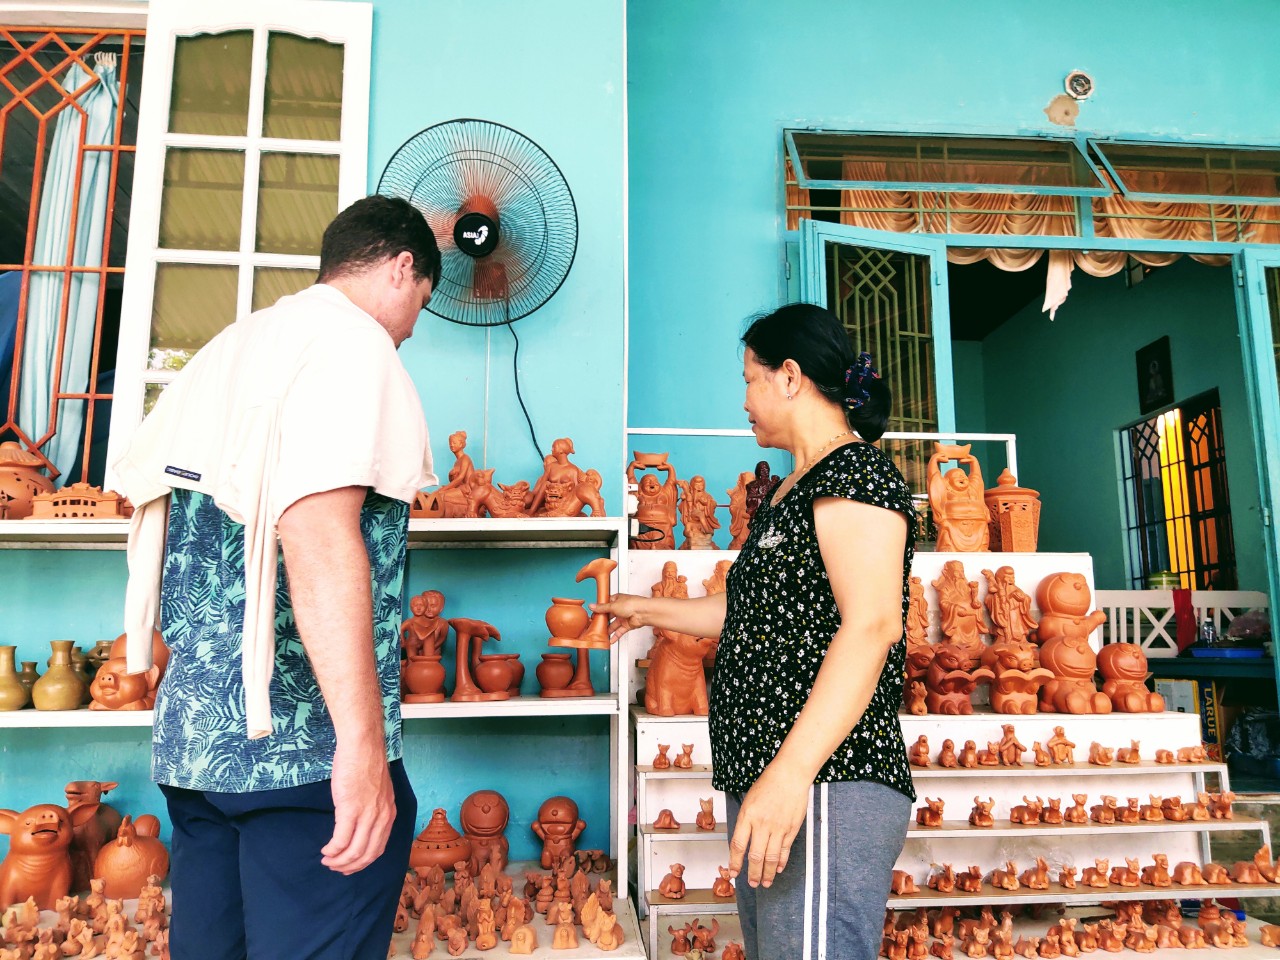 Khám phá làng gốm Thanh Hà - Khu di tích ấn tượng tại Hội An